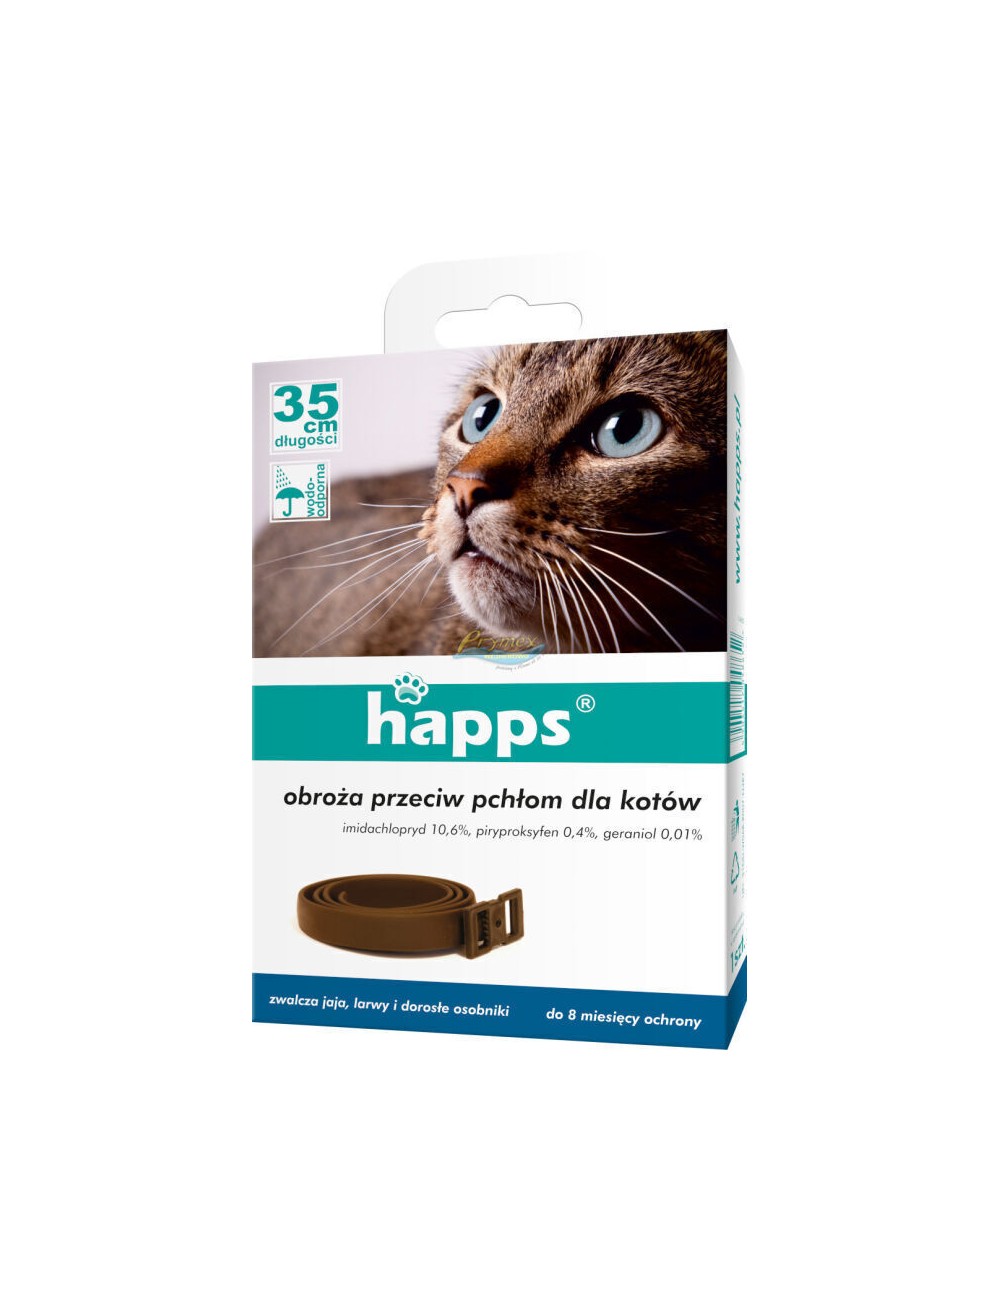 Happs Obroża Przeciw Pchłom dla Kotów (35 cm) 1 szt